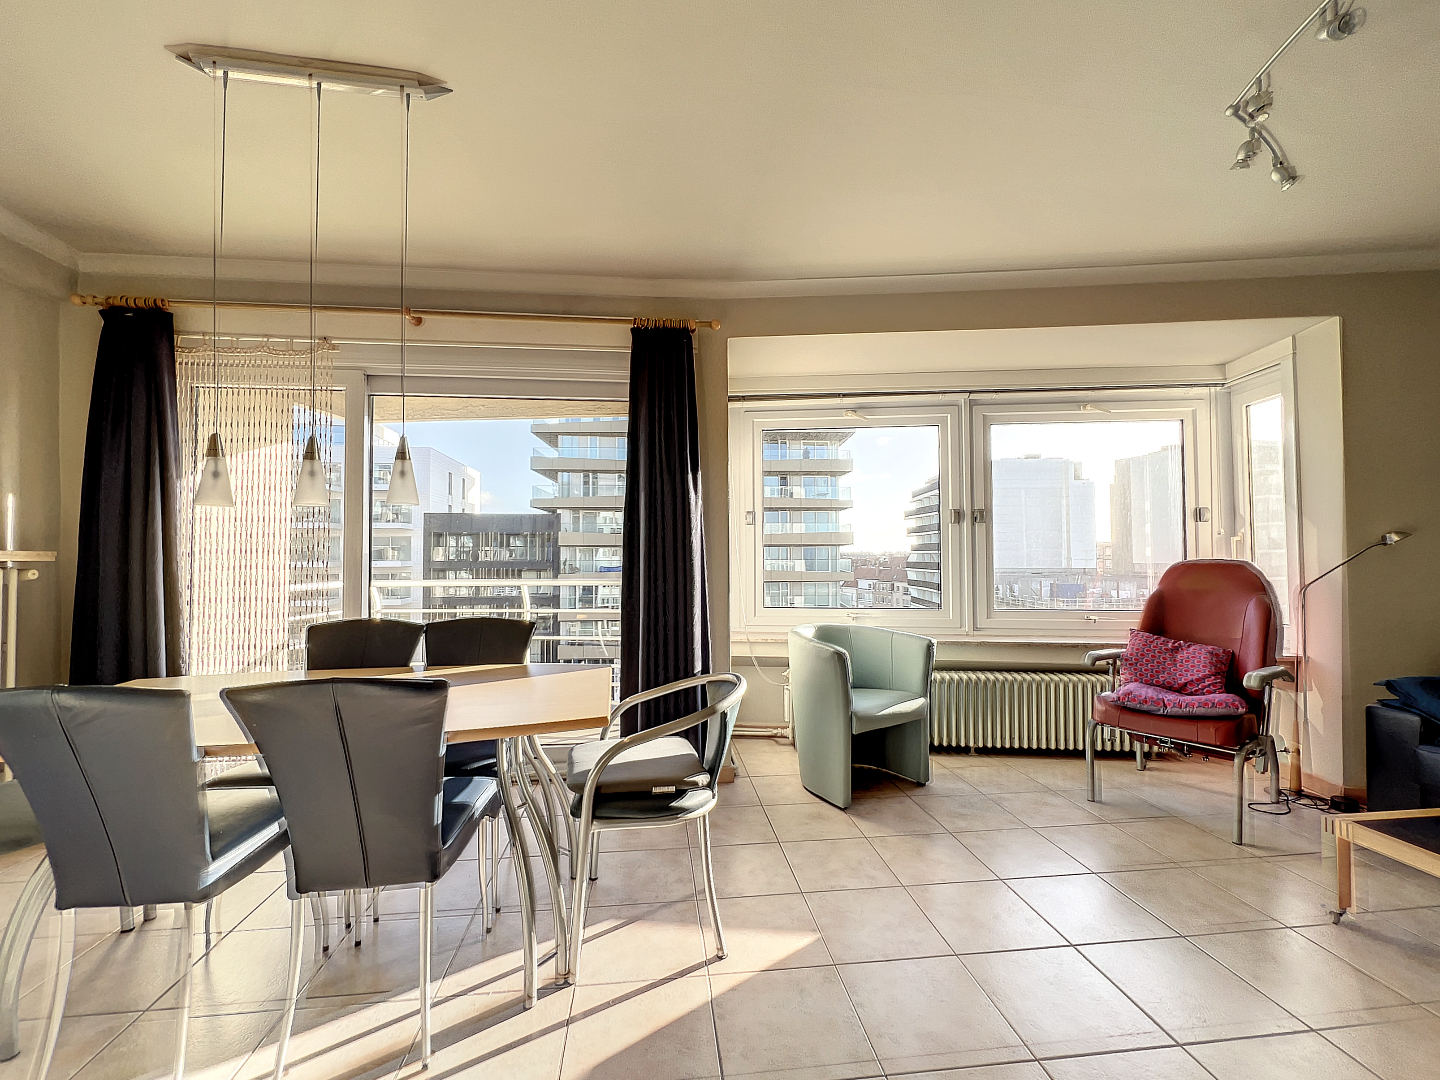 Lichtrijk 1-slkp appartement  op de zeedijk met aangenaam terras. 